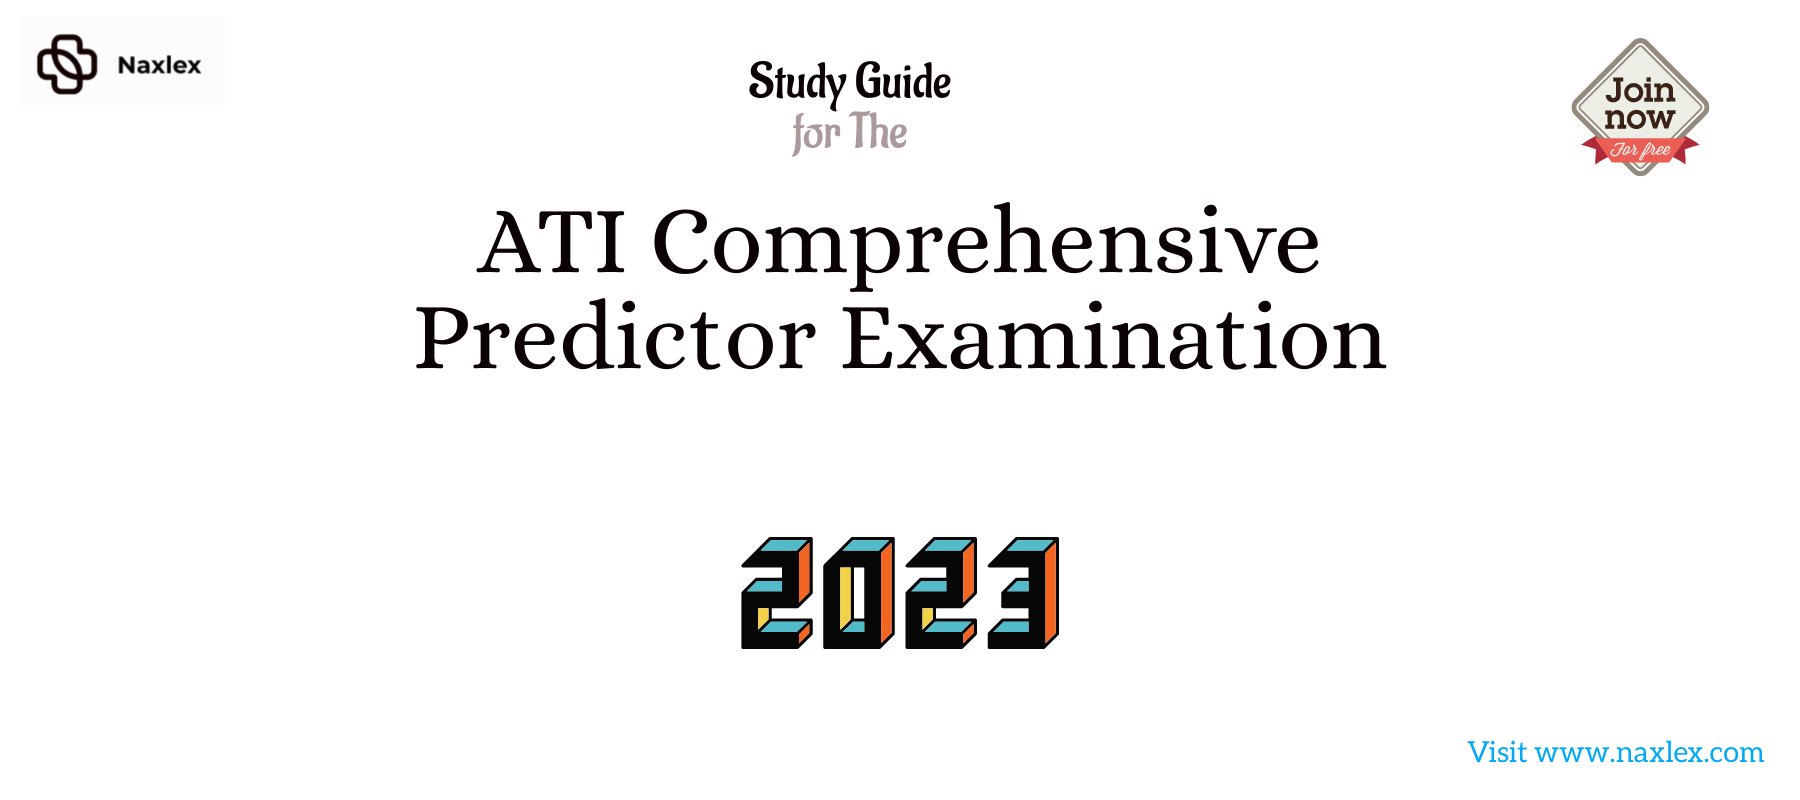 ATI Comprehensive Predictor Study Guide